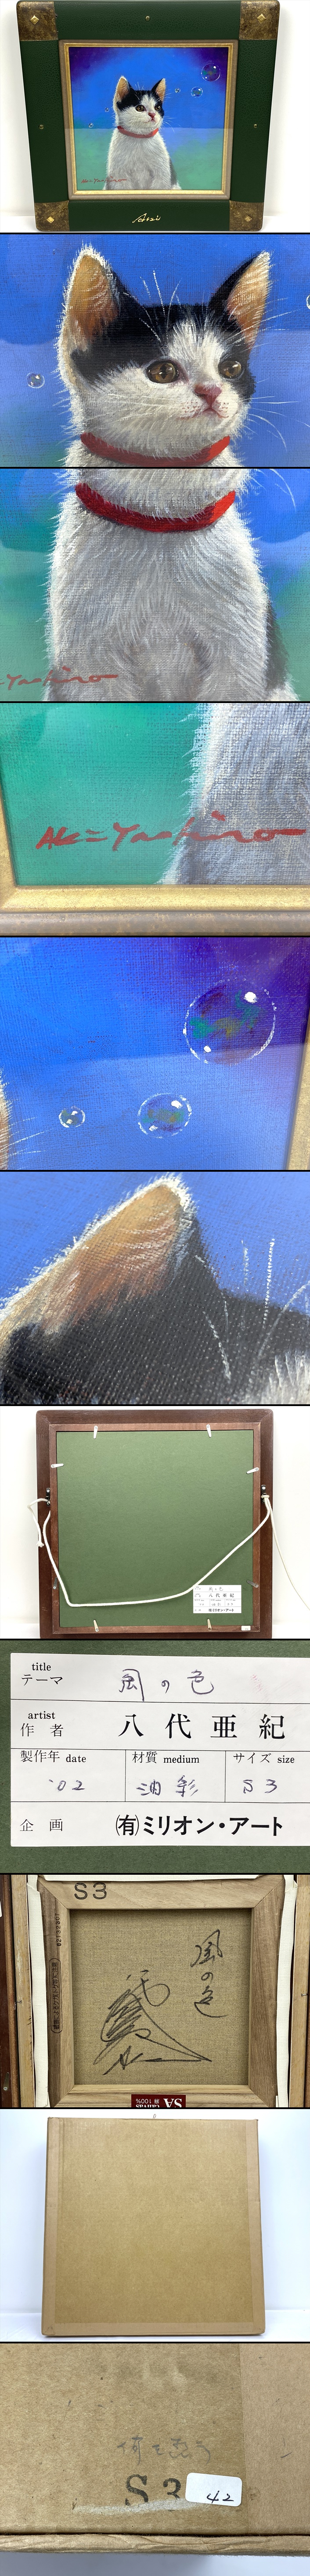 最新品安い八代亜紀 『風の色』 油彩 猫 ネコ S3号 2002年 額 絵画 美術品 ミリオン・アート B697 動物画